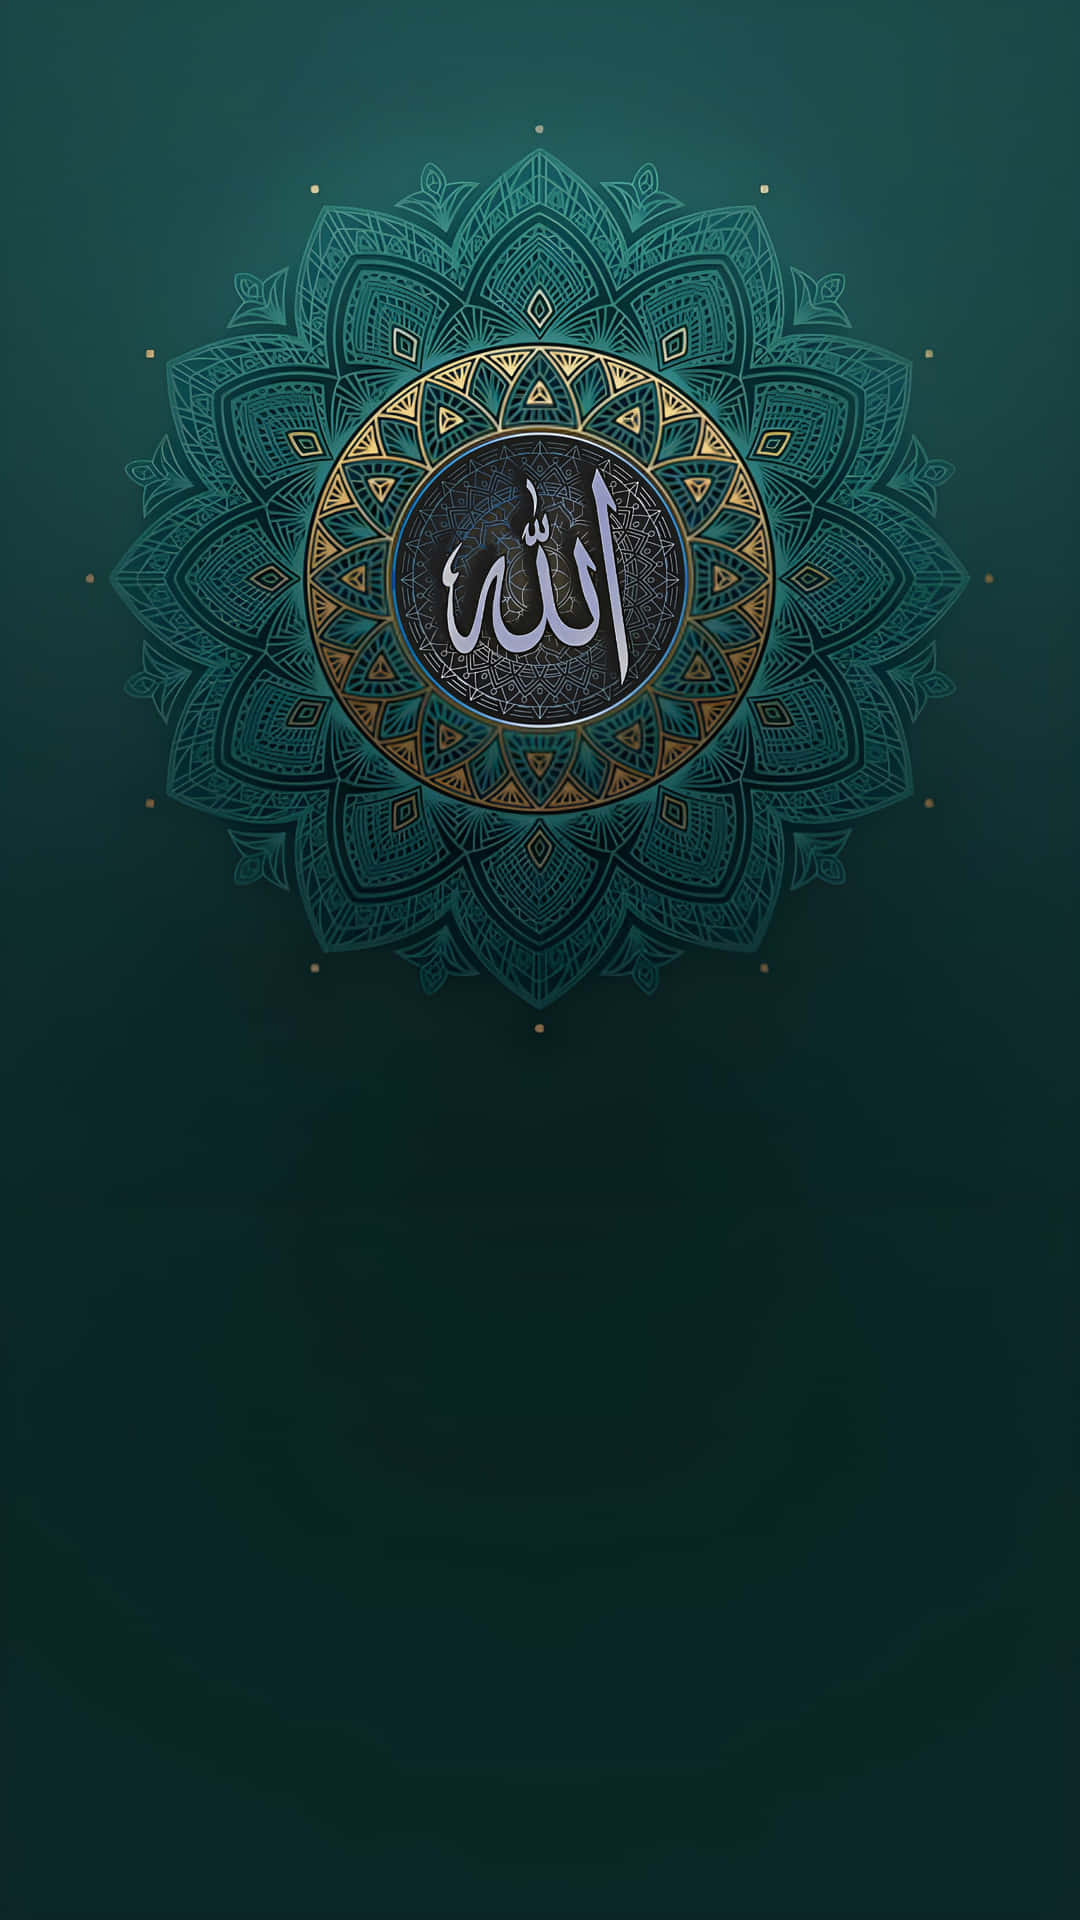 Allah Wallpaper Images - Free Download on Freepik